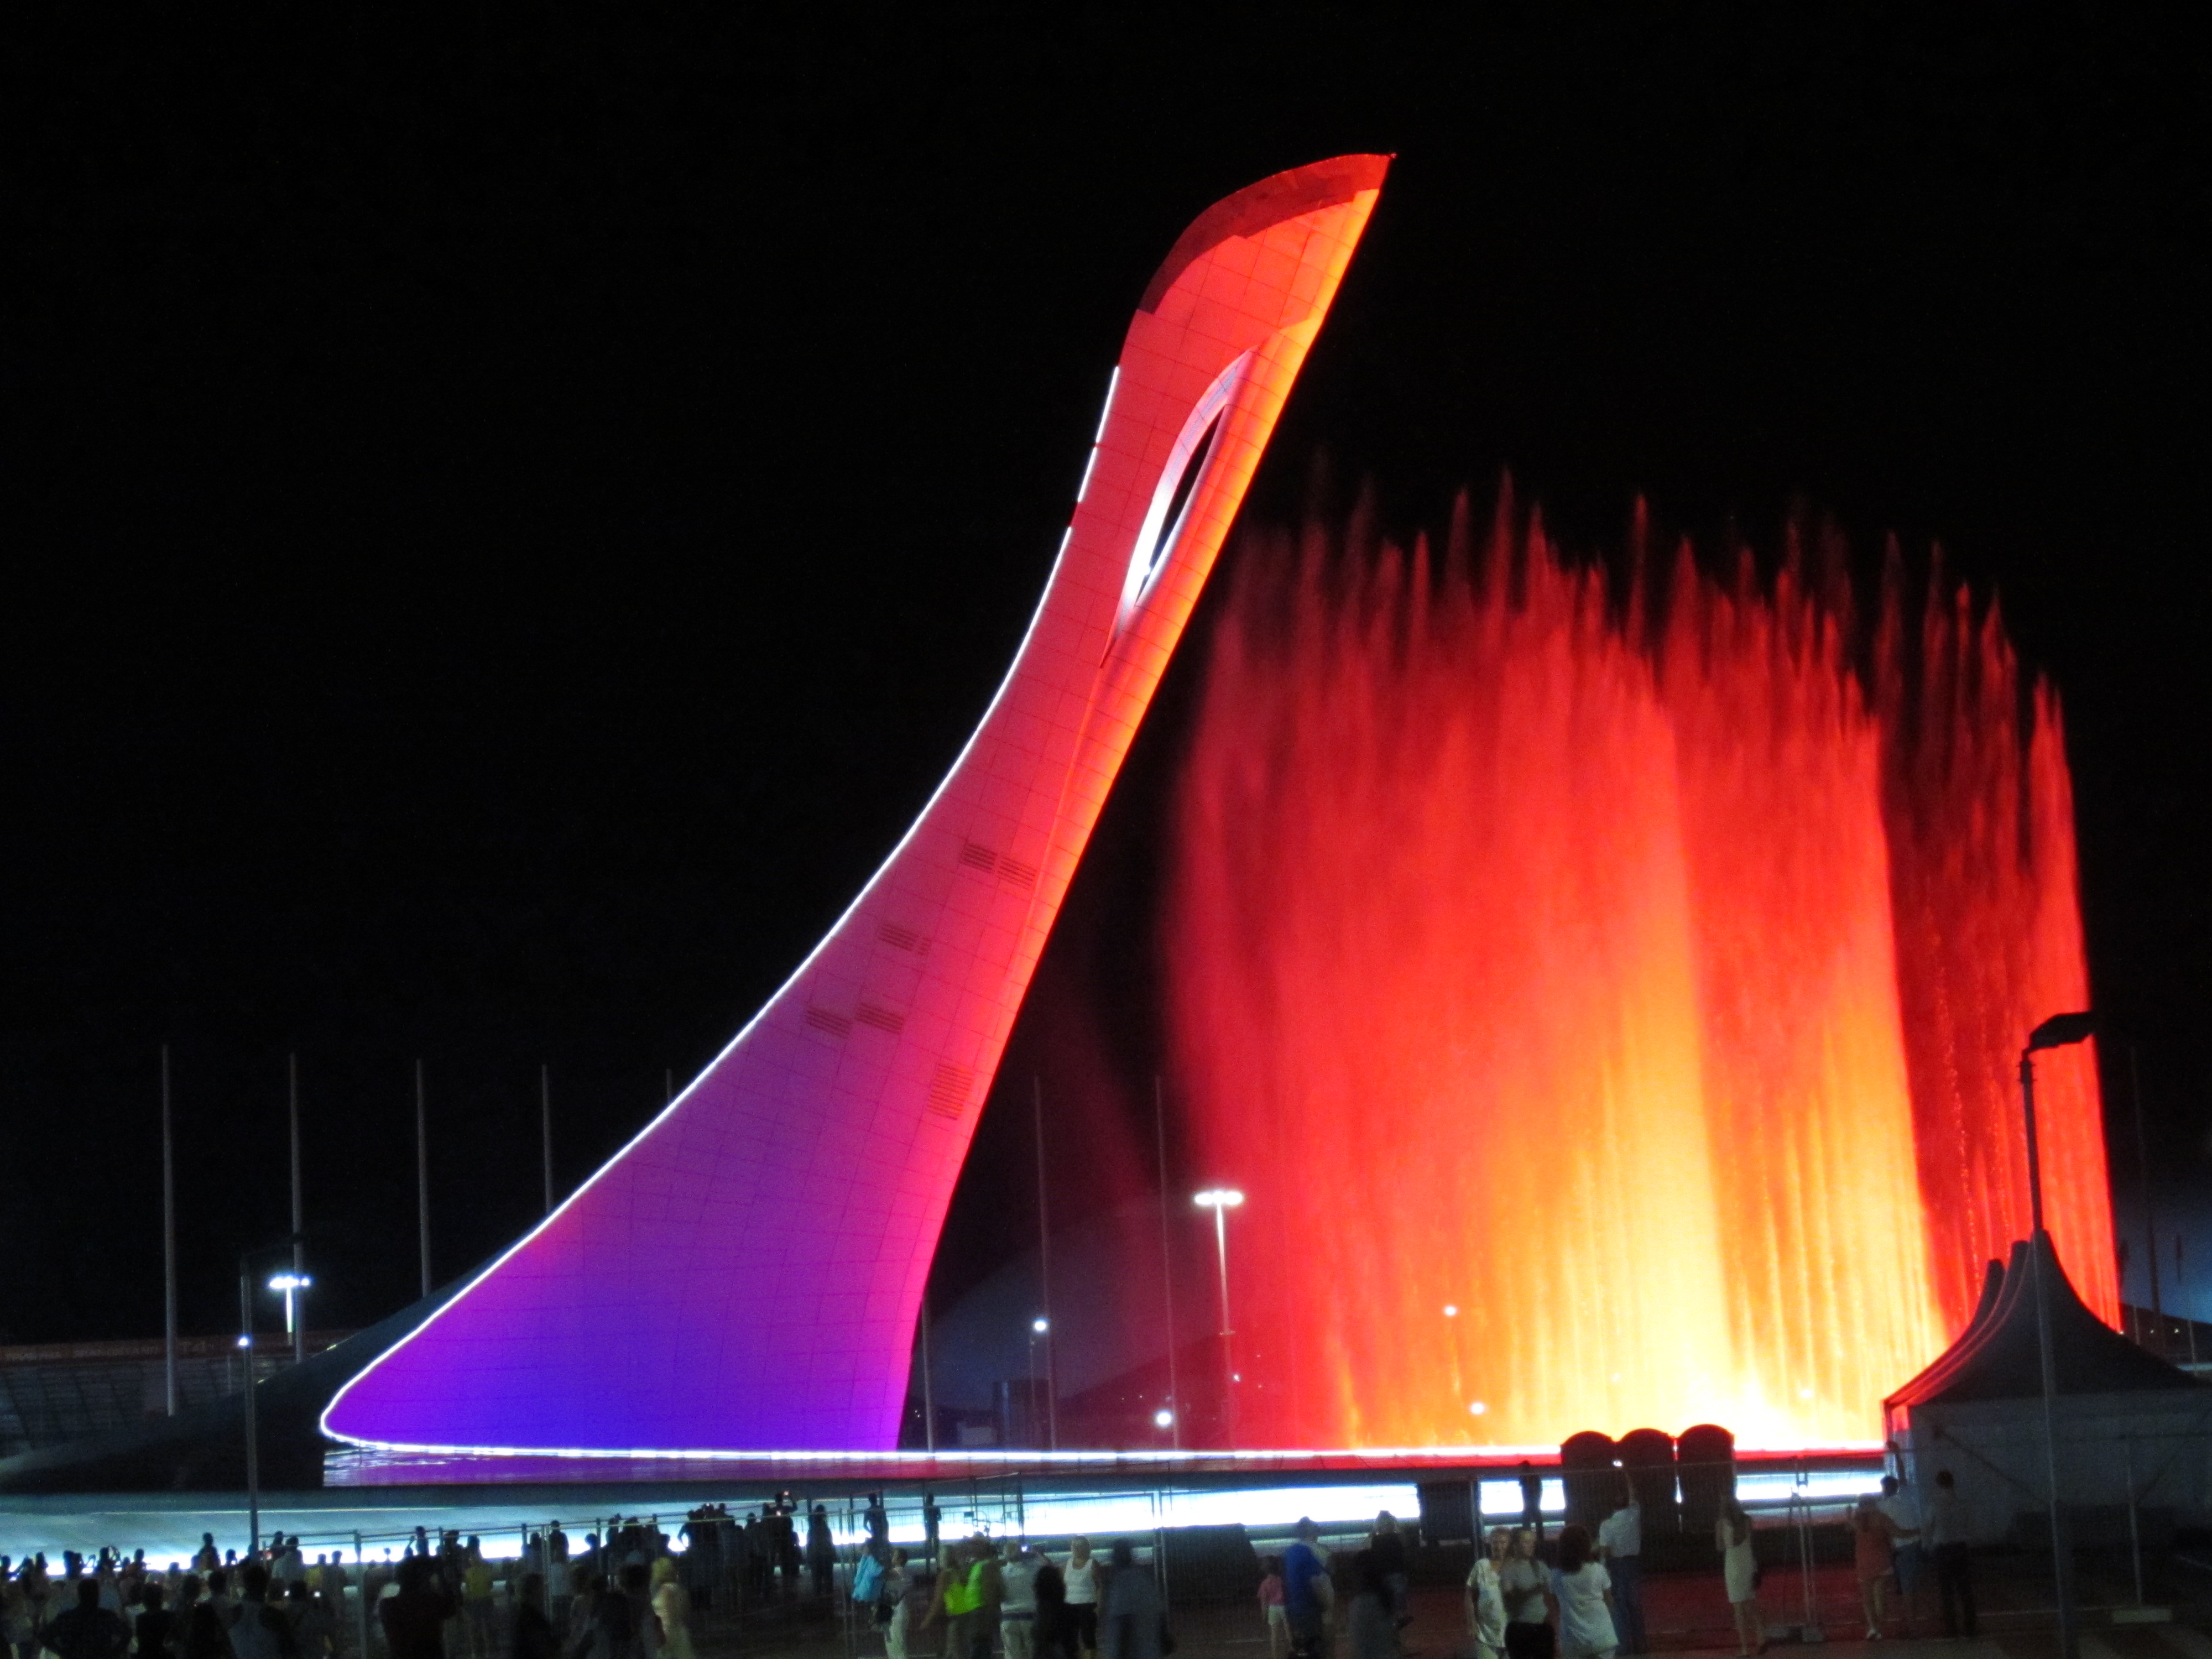 Олимпийский факел. Олимпийский парк Адлер факел. Факел в Олимпийском парке Адлер. Факел в Сочи в Олимпийском парке. Олимпийские объекты в Сочи факел.